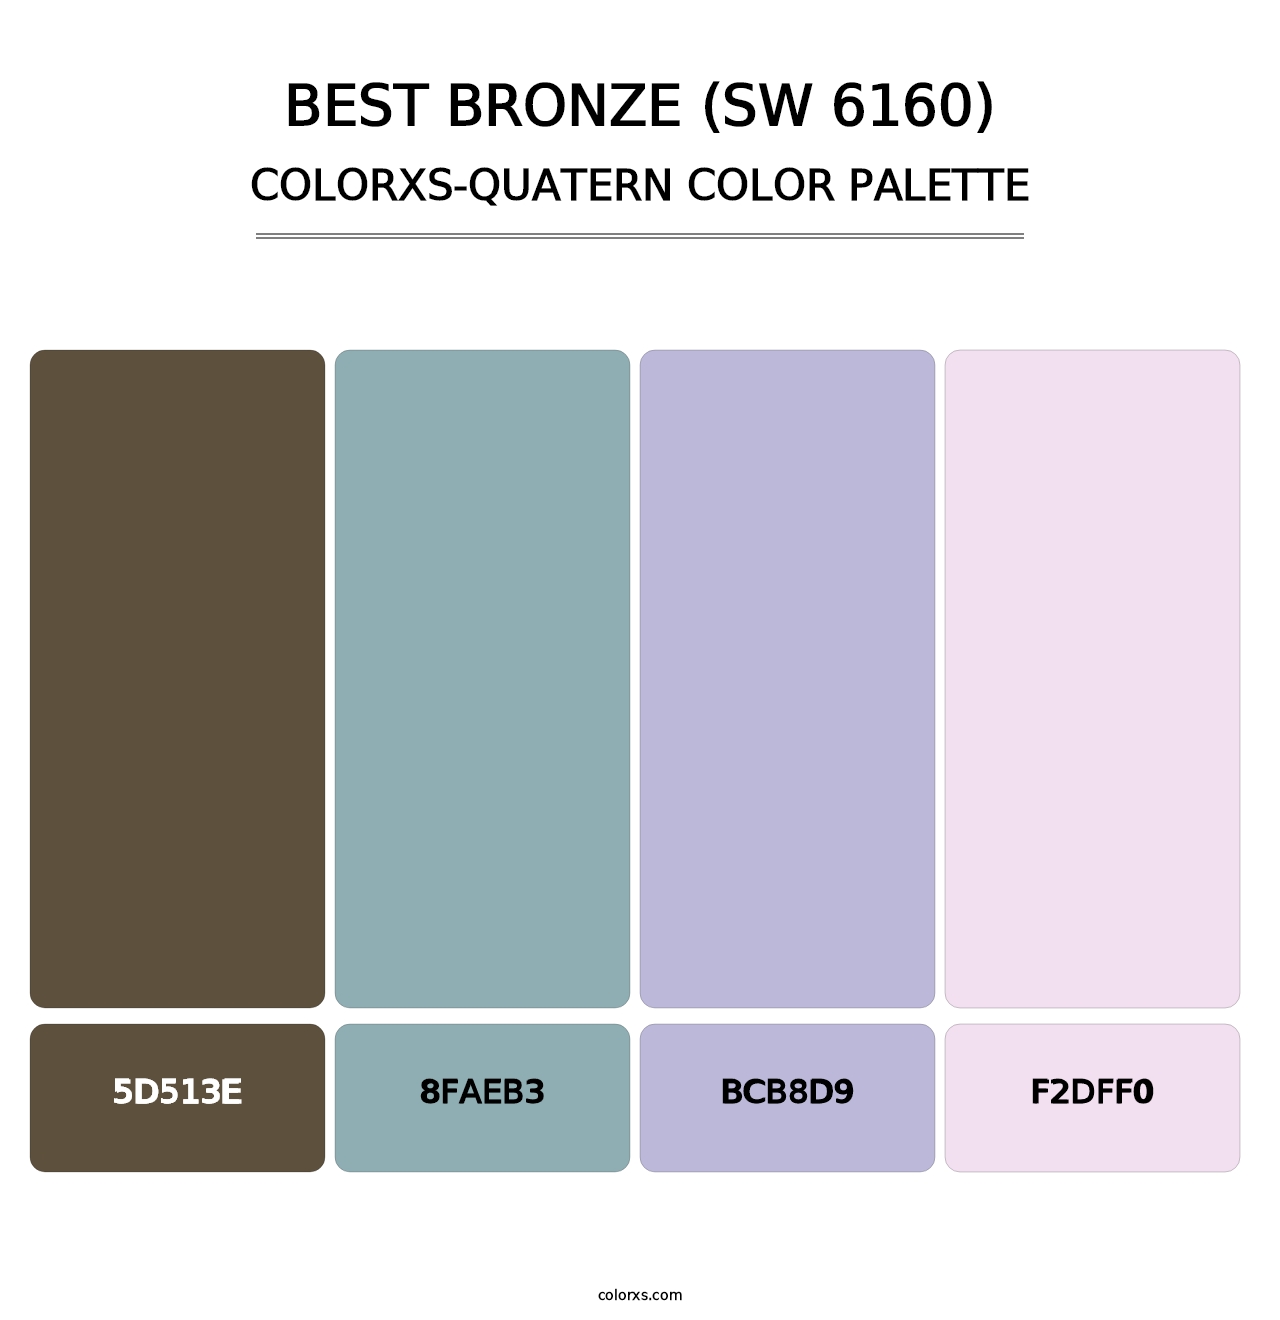 Best Bronze (SW 6160) - Colorxs Quatern Palette